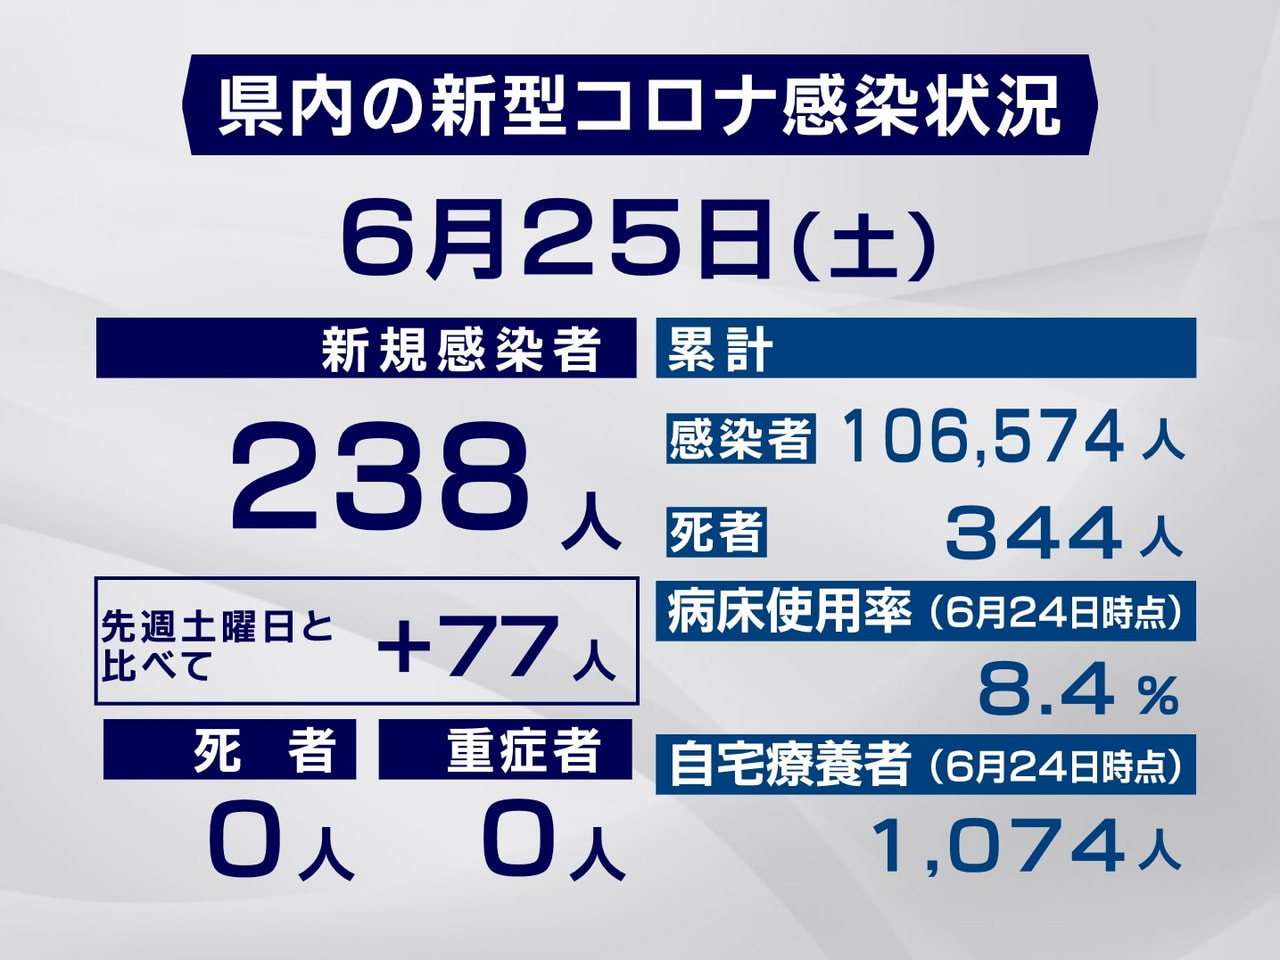 岐阜県は２５日、新型コロナウイルスの新規感染者が２３８人確認されたと発表しました...